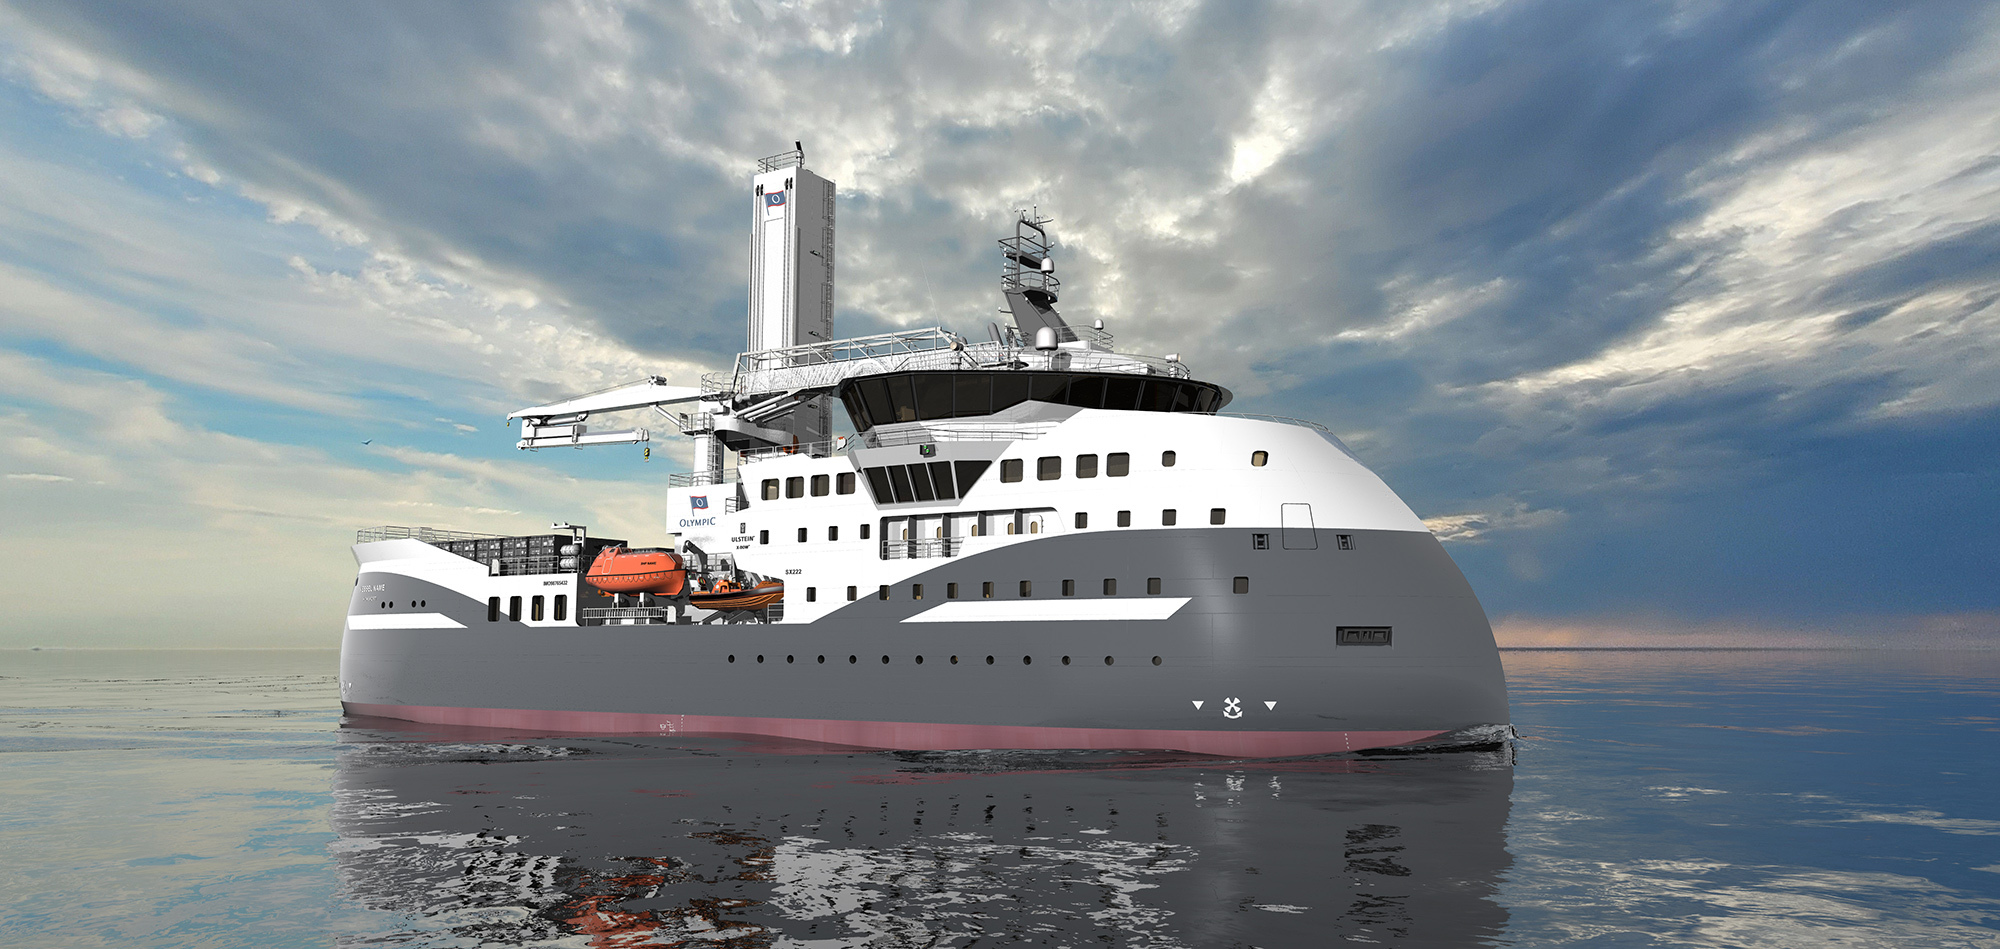 Olympic sine ULSTEIN SX222-skip til offshore vind: Skrogforma og framdriftssystemet sikrar høg operabilitet, gode sjøeigenskapar og redusert miljøavtrykk.